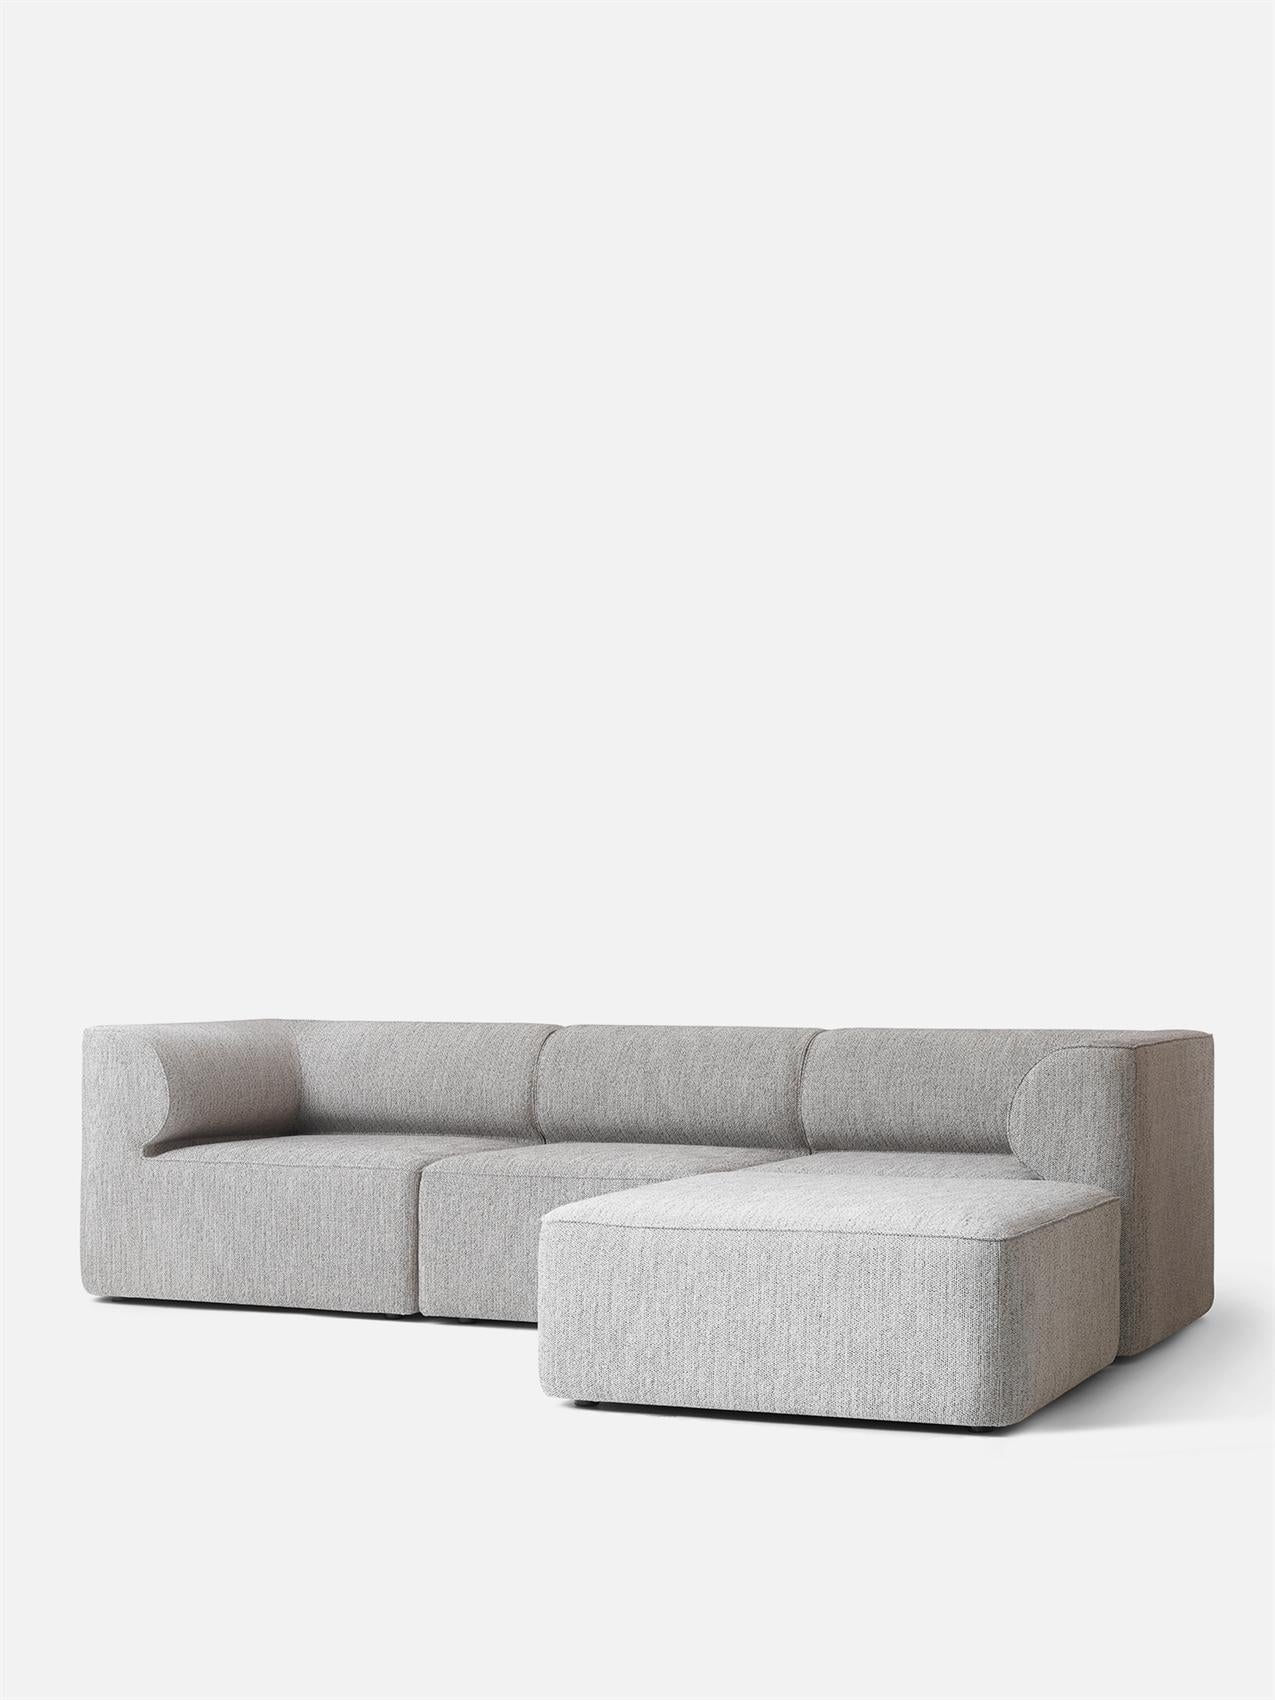 grey modular lounge